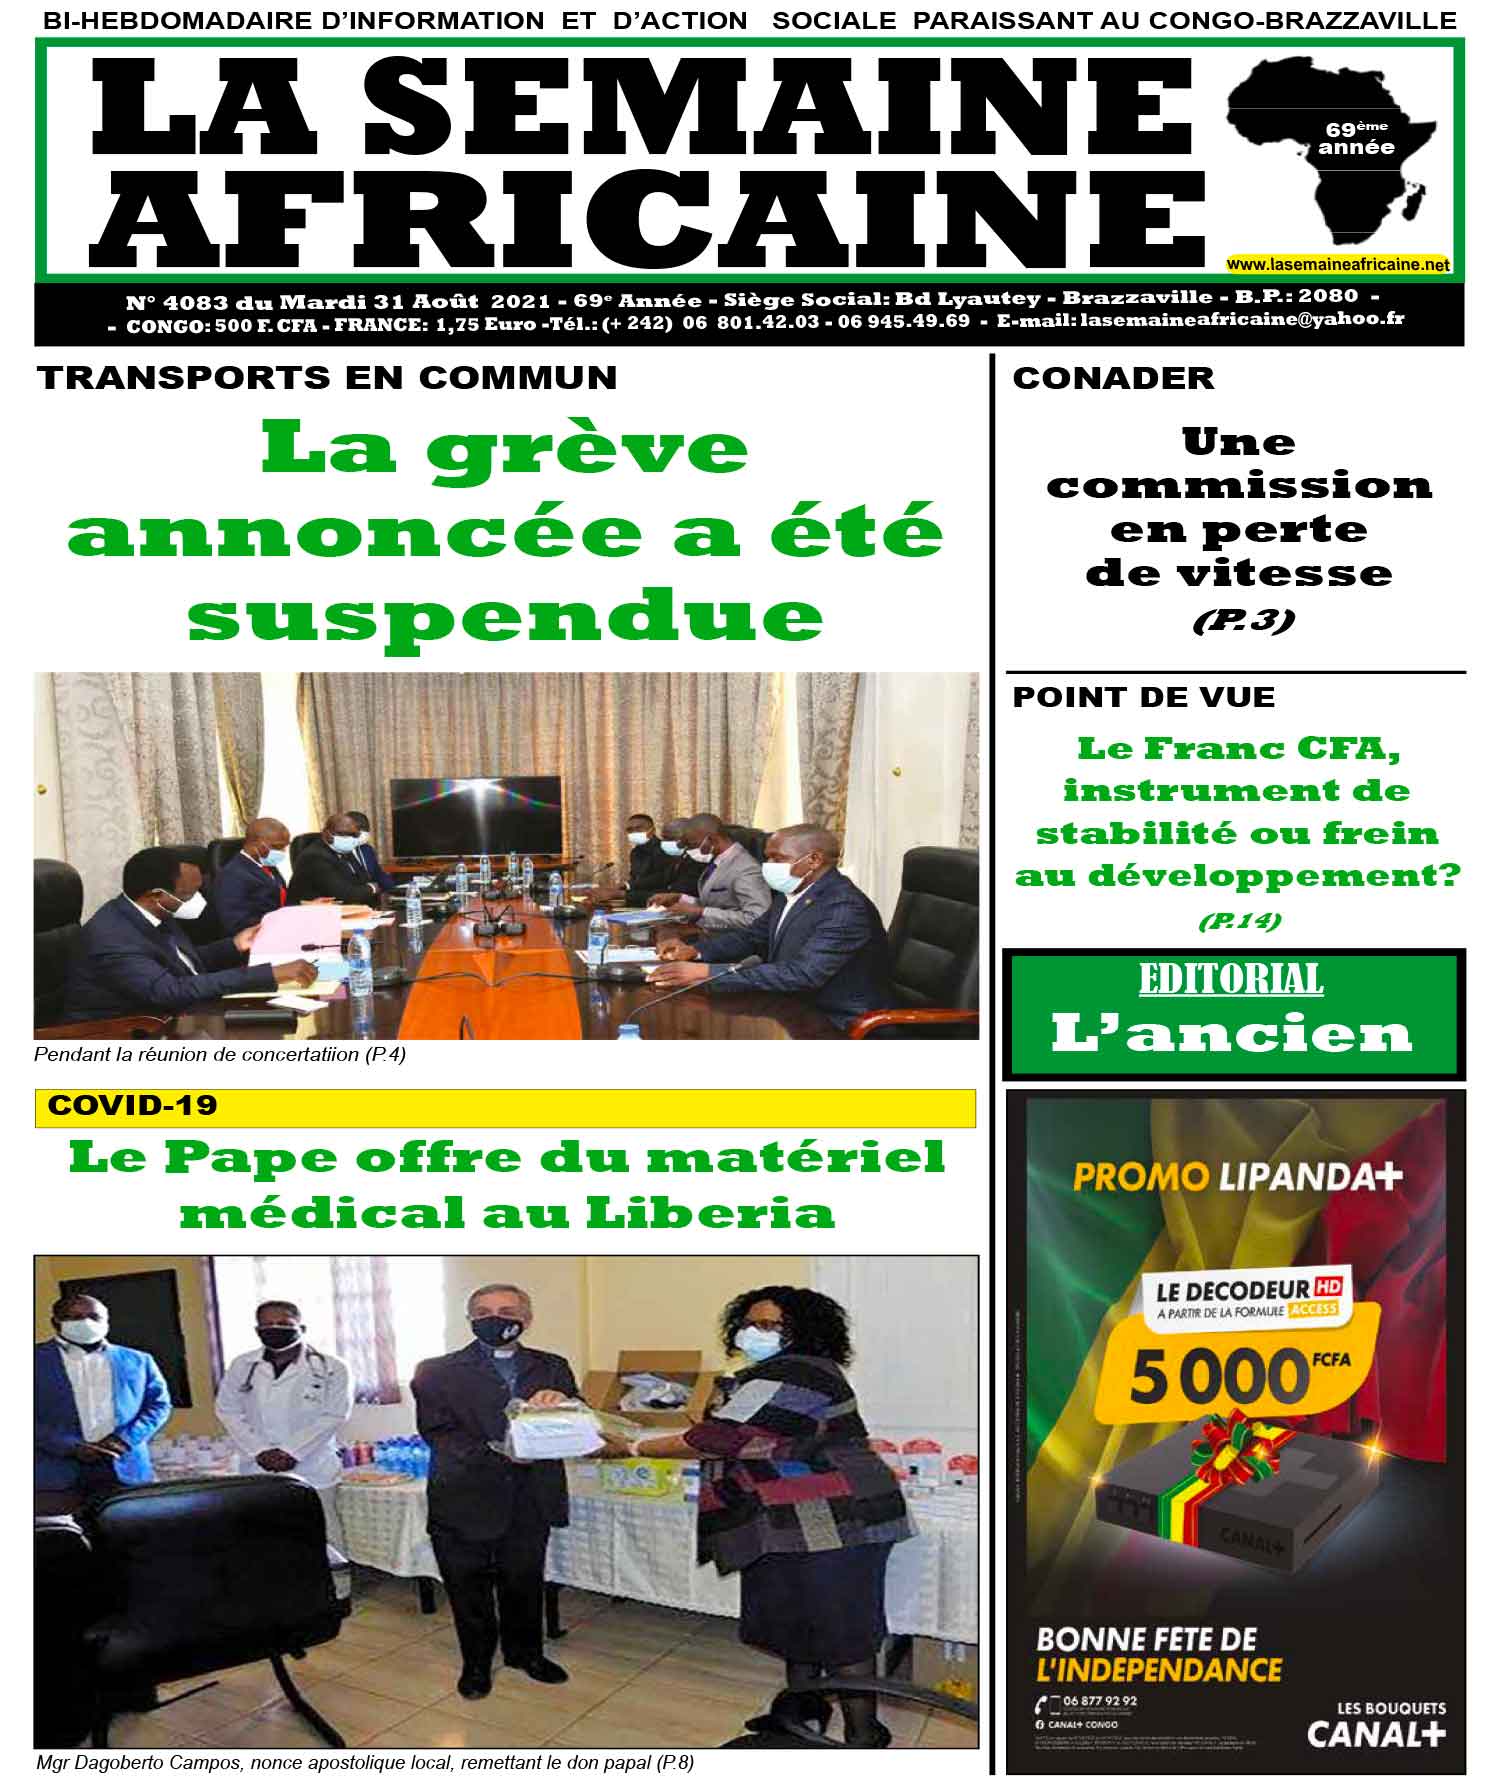 Cover La Semaine Africaine - 4083 